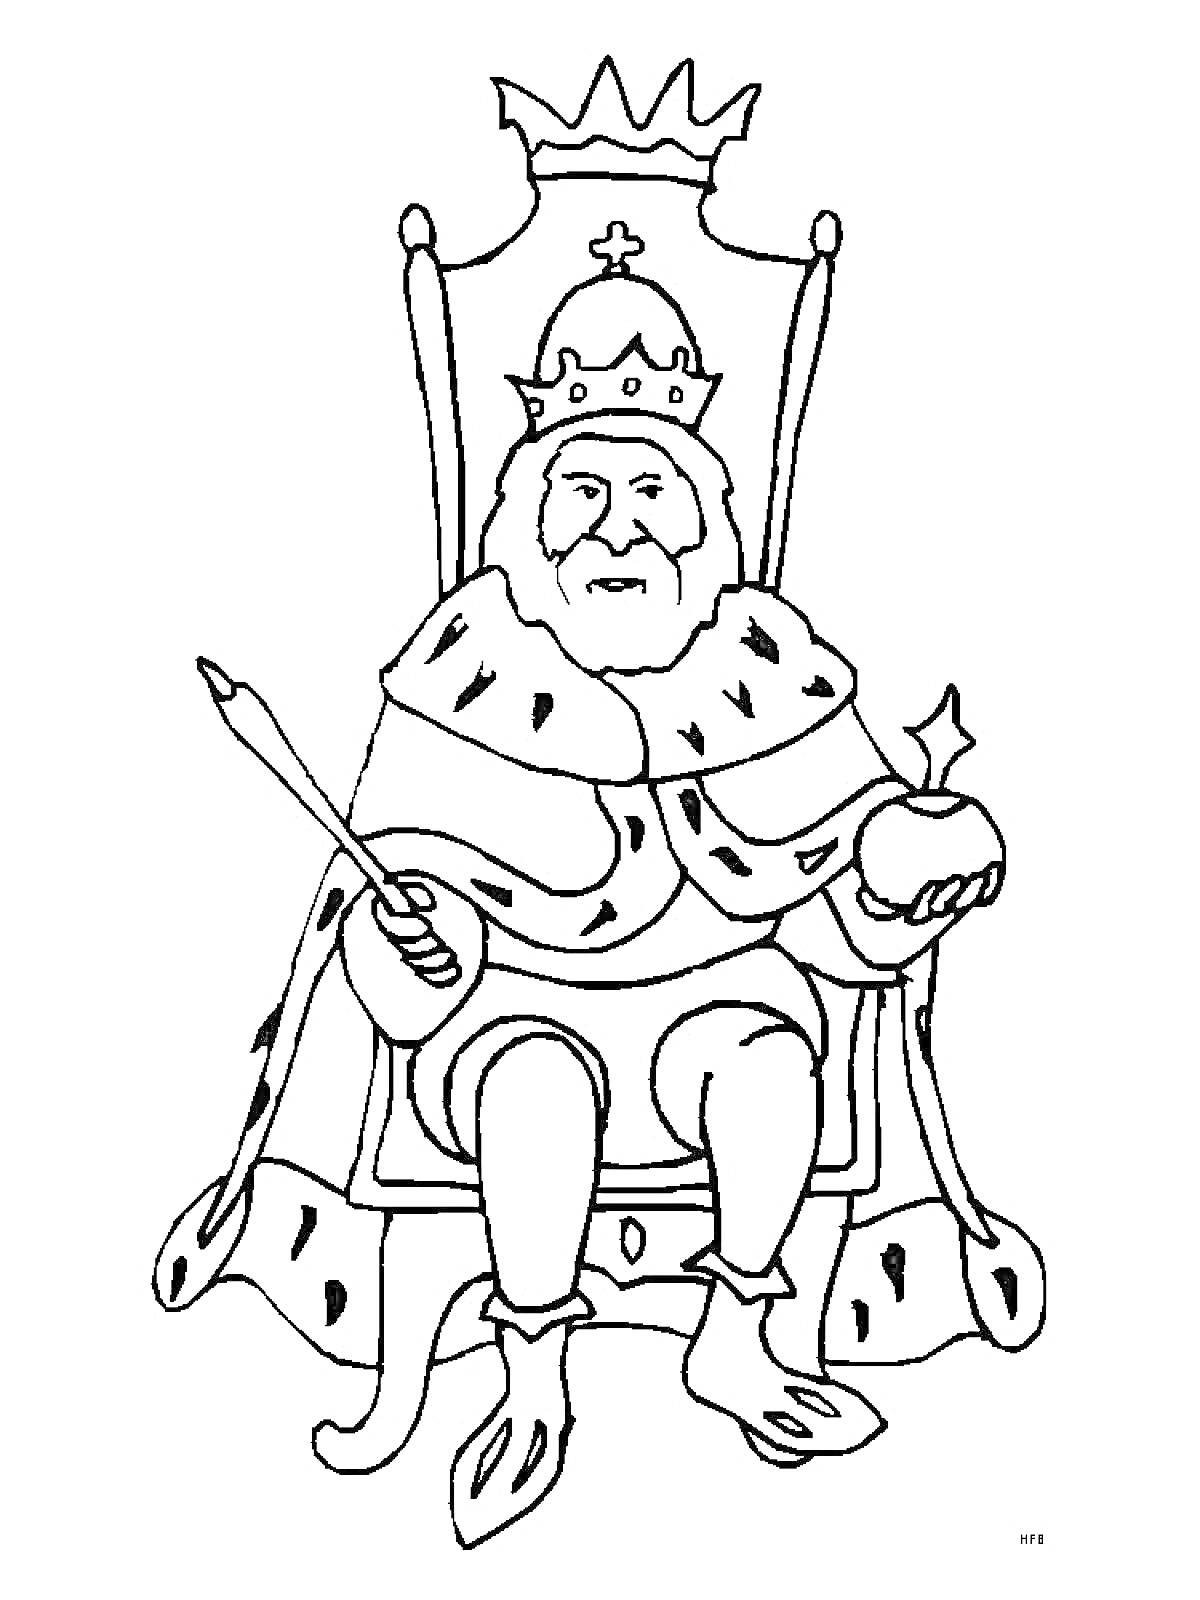 Царь на троне с короной, державой и скипетром